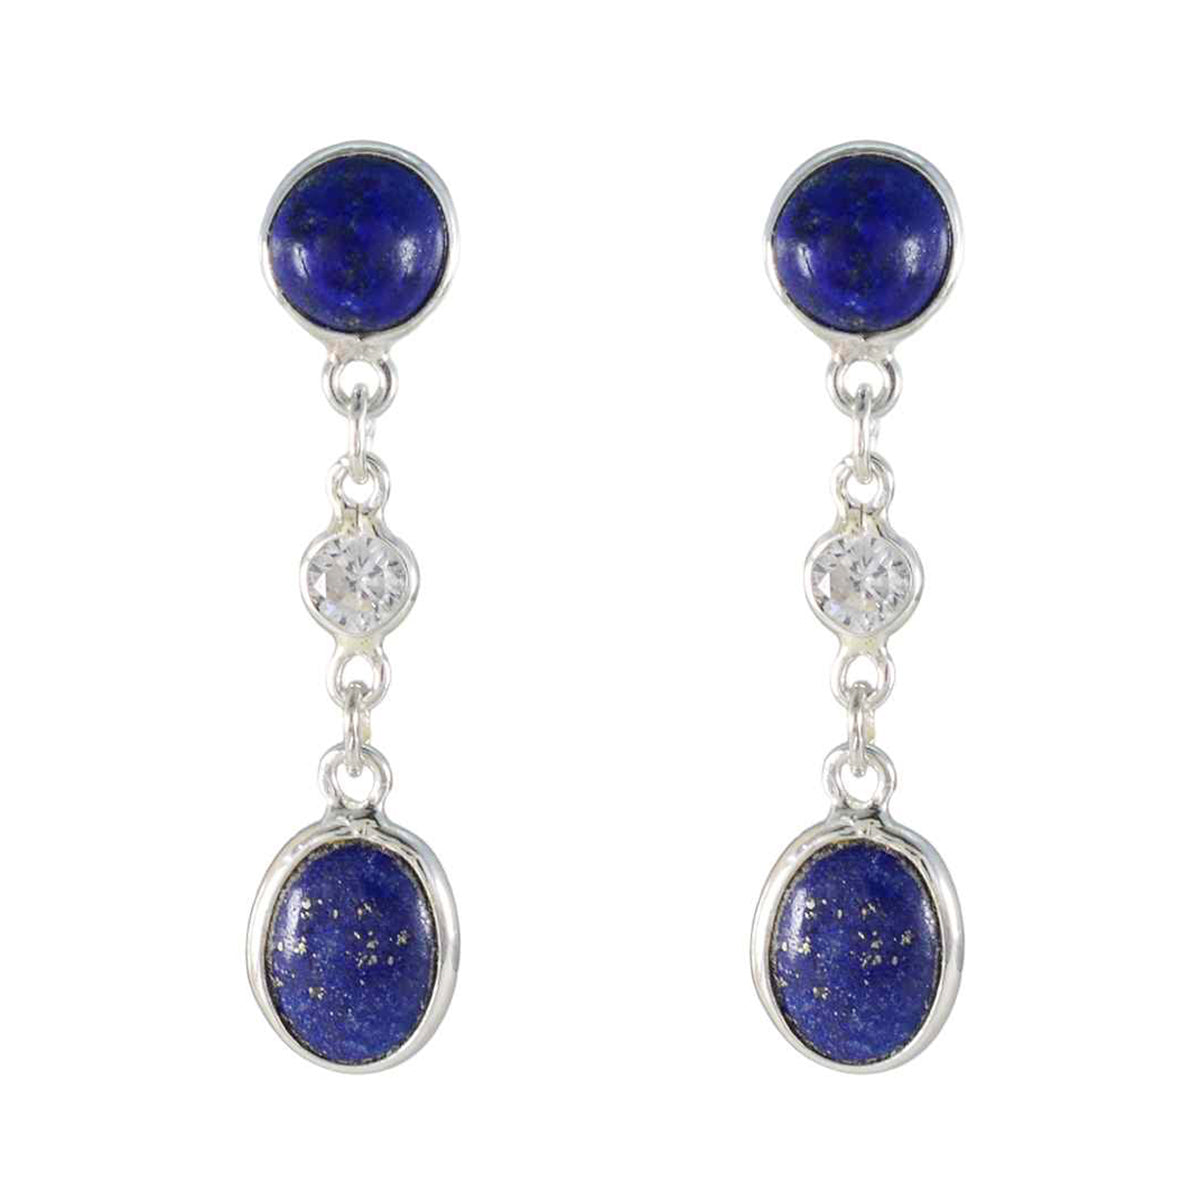 Riyo belle boucle d'oreille en argent sterling pour dame lapis lazuli boucle d'oreille réglage de la lunette boucle d'oreille bleue boucle d'oreille